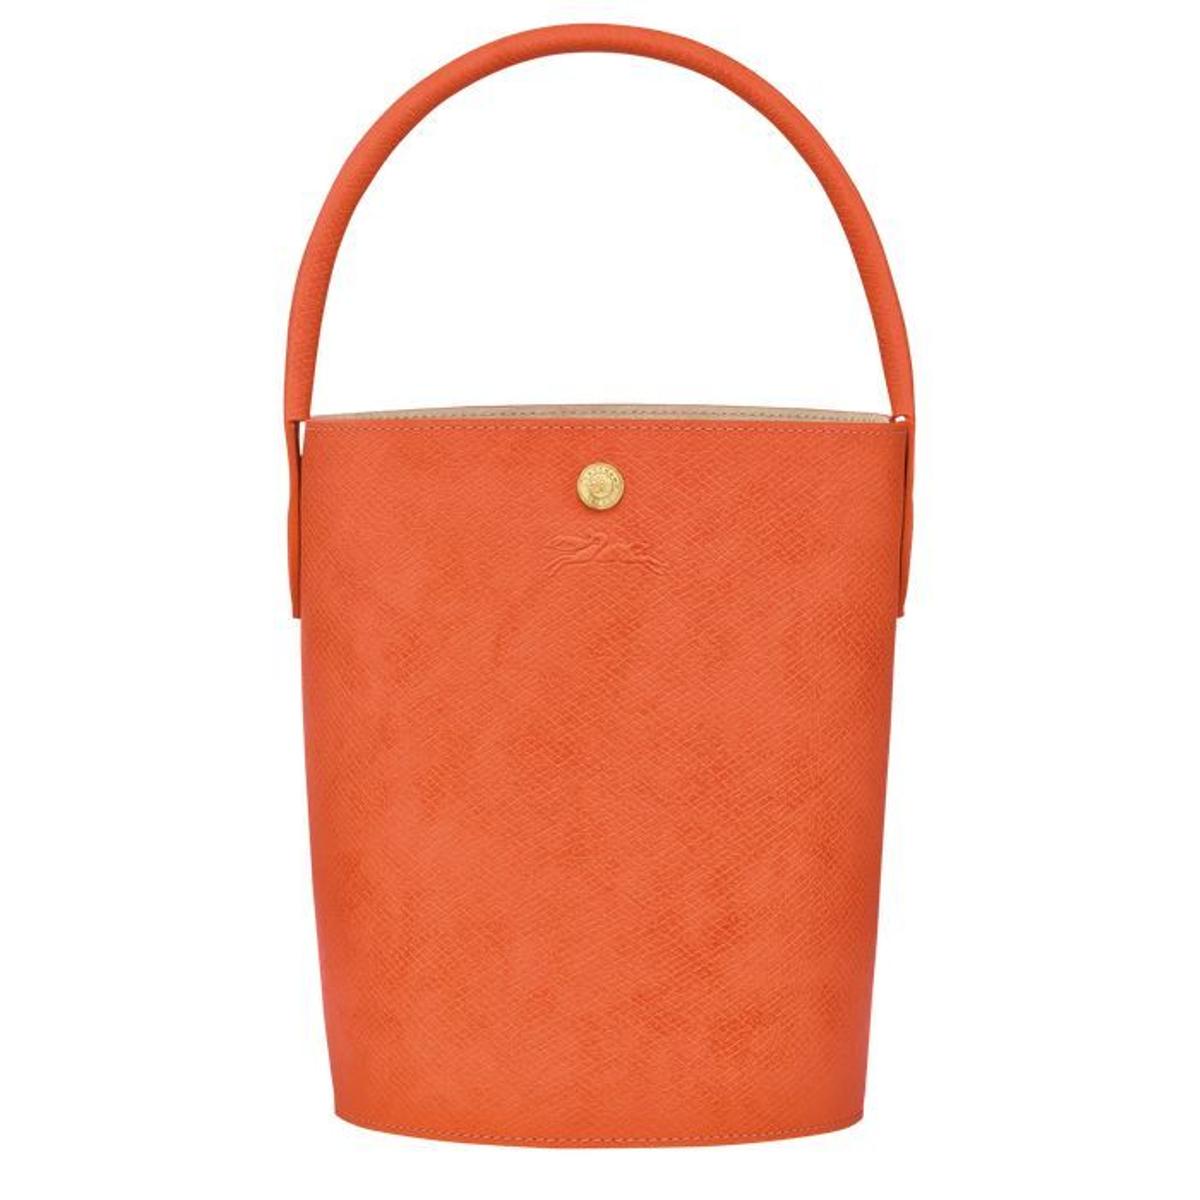 'Bucket bag' de Longchamp